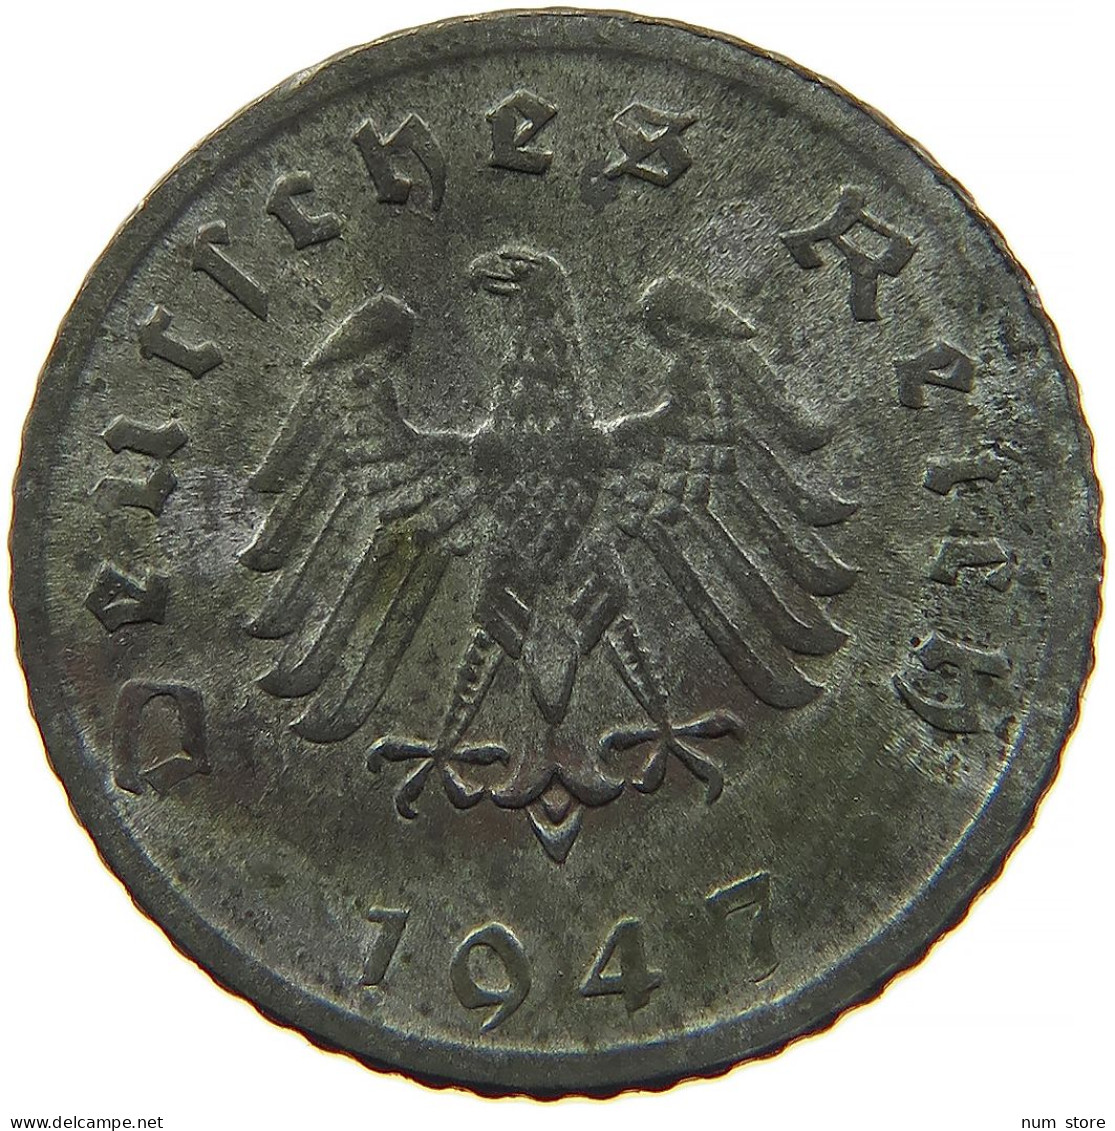 ALLIIERTE BESETZUNG 5 REICHSPFENNIG 1947 D  #t028 0375 - 5 Reichspfennig